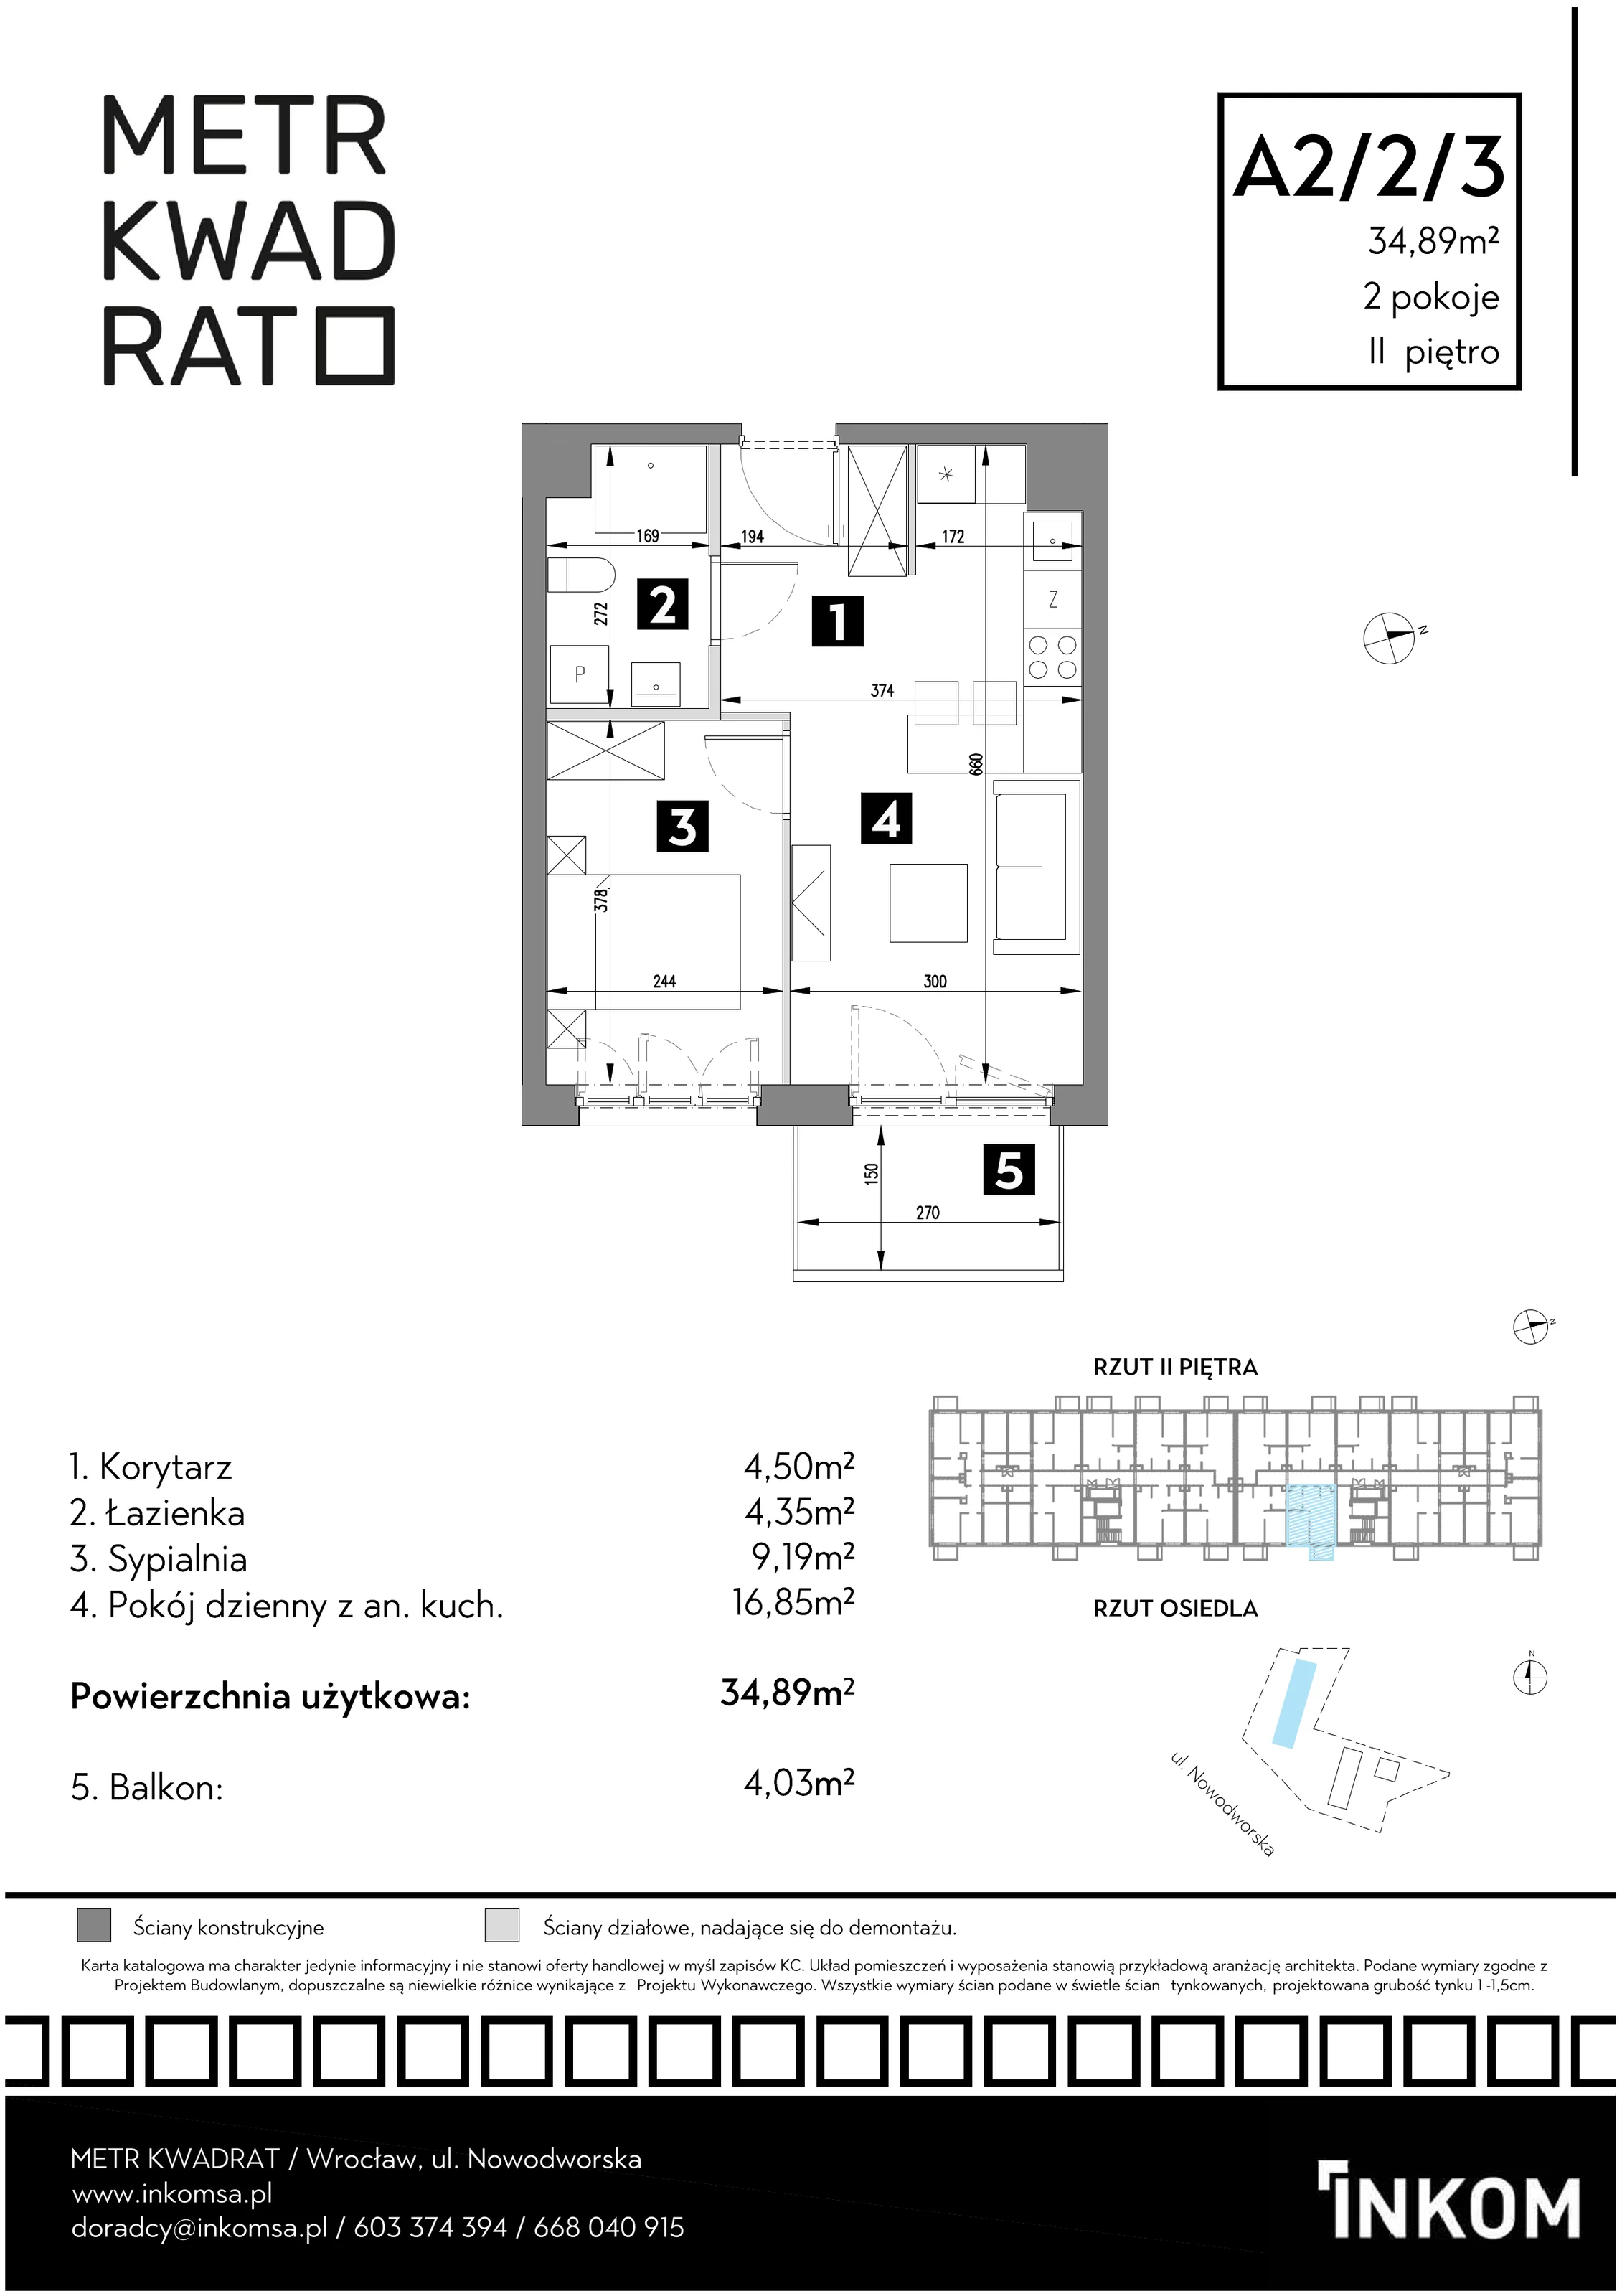 Mieszkanie 34,89 m², piętro 2, oferta nr A2/2/3, Metr Kwadrat, Wrocław, Nowy Dwór, ul. Nowodworska 17B